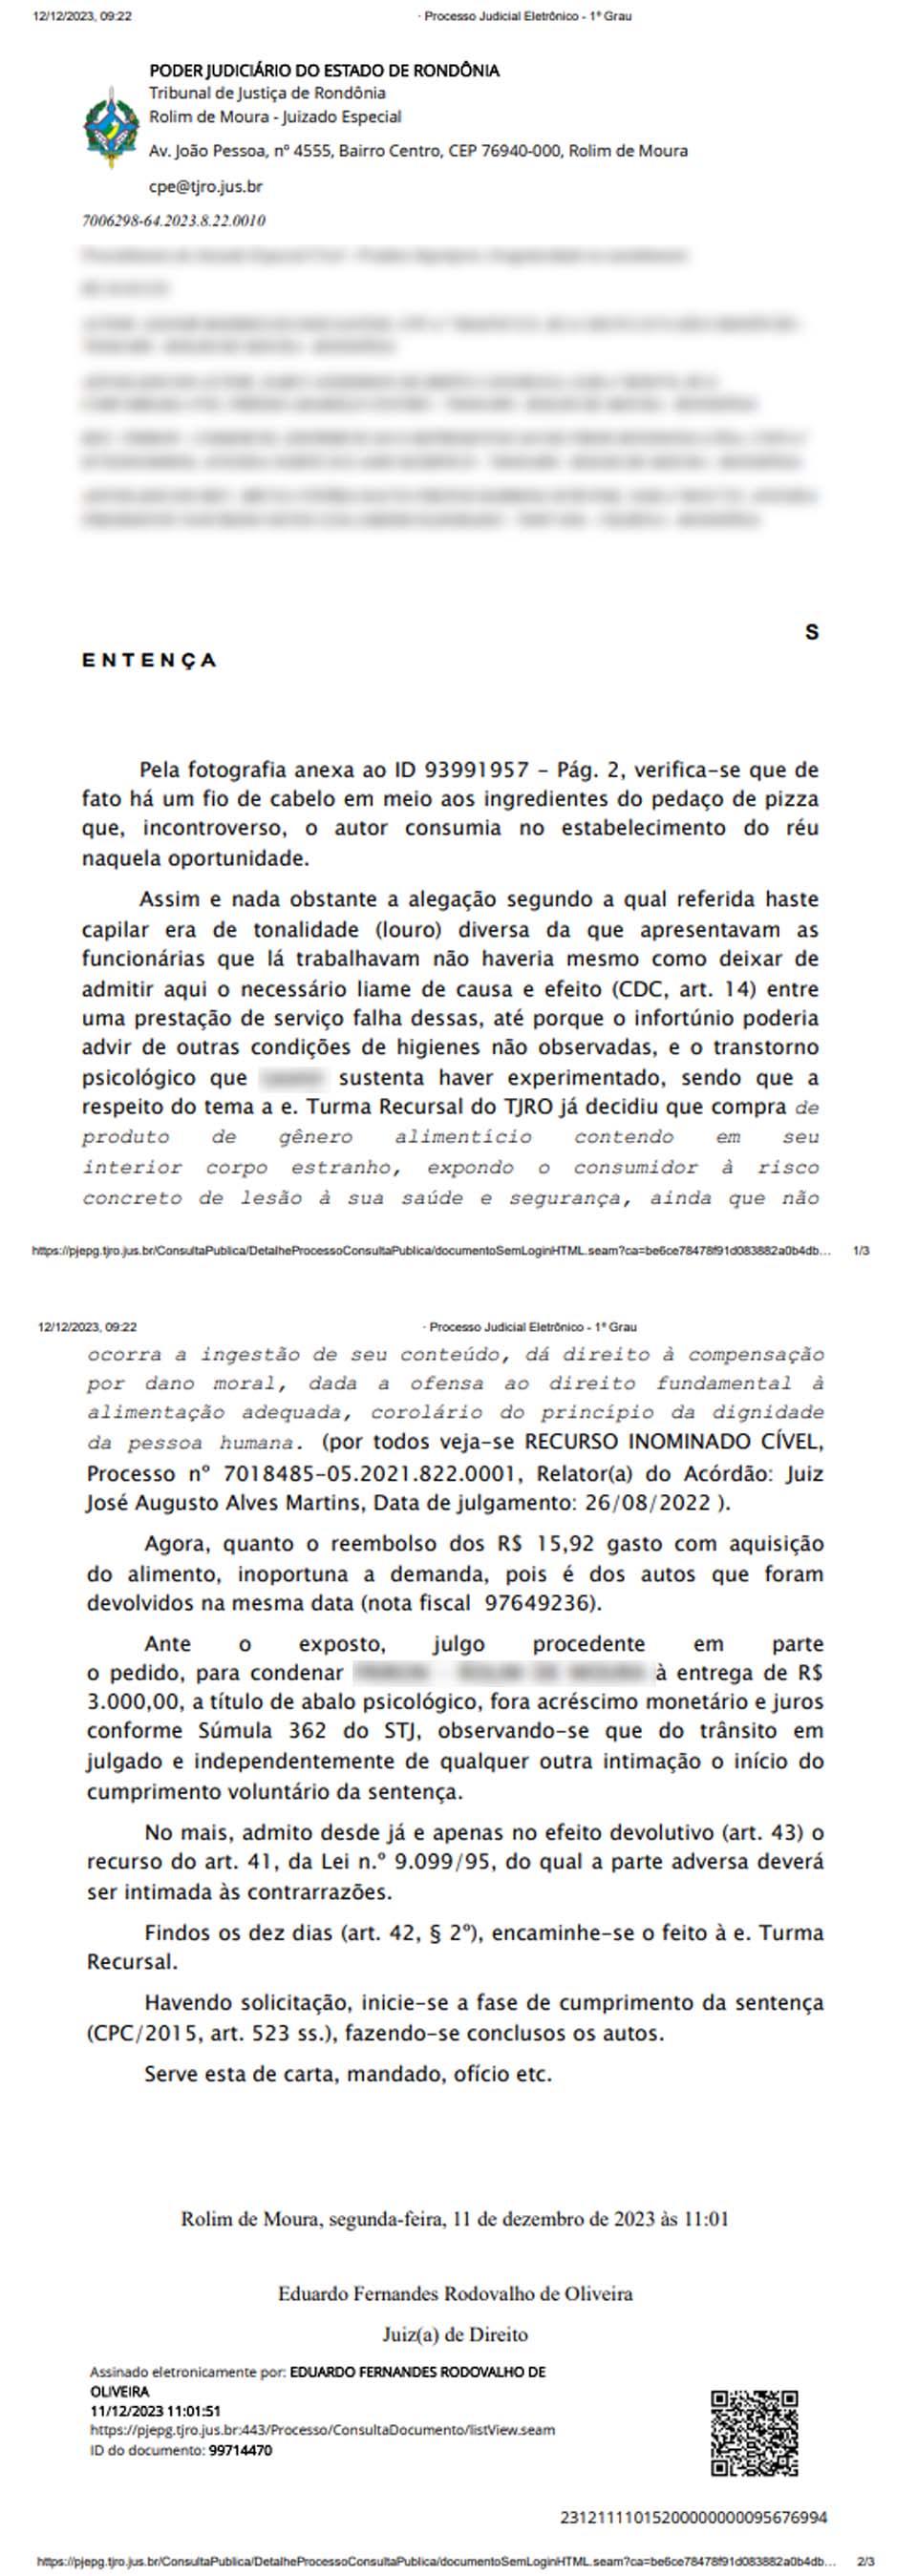 Rolim de Moura: Fio de cabelo em pizza resulta em indenização por abalo psicológico em caso judicial de Rondônia